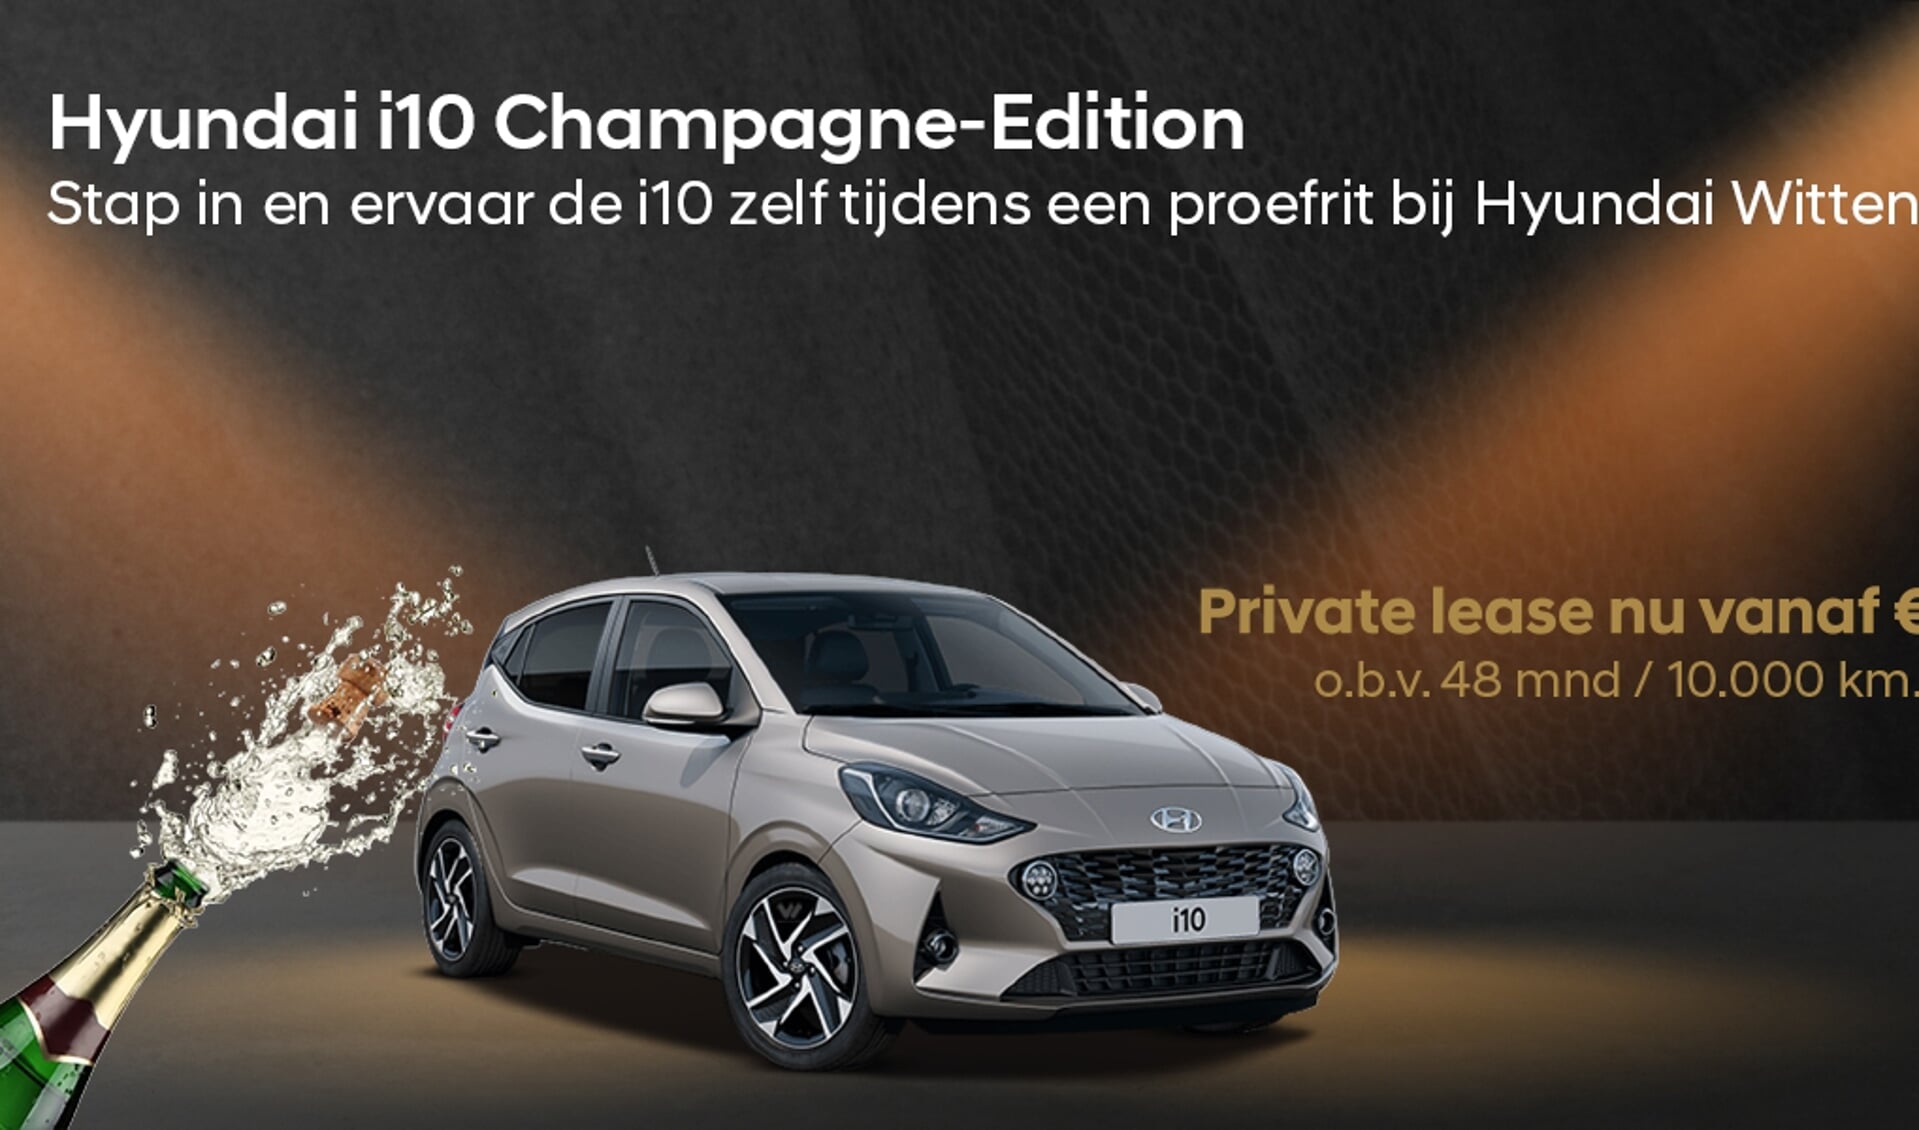 Exclusief Overgang Afkorten Hyundai Wittenberg Kies voor onze Champagne-Edition uit voorraad! - VARnws  Stichtste Vecht